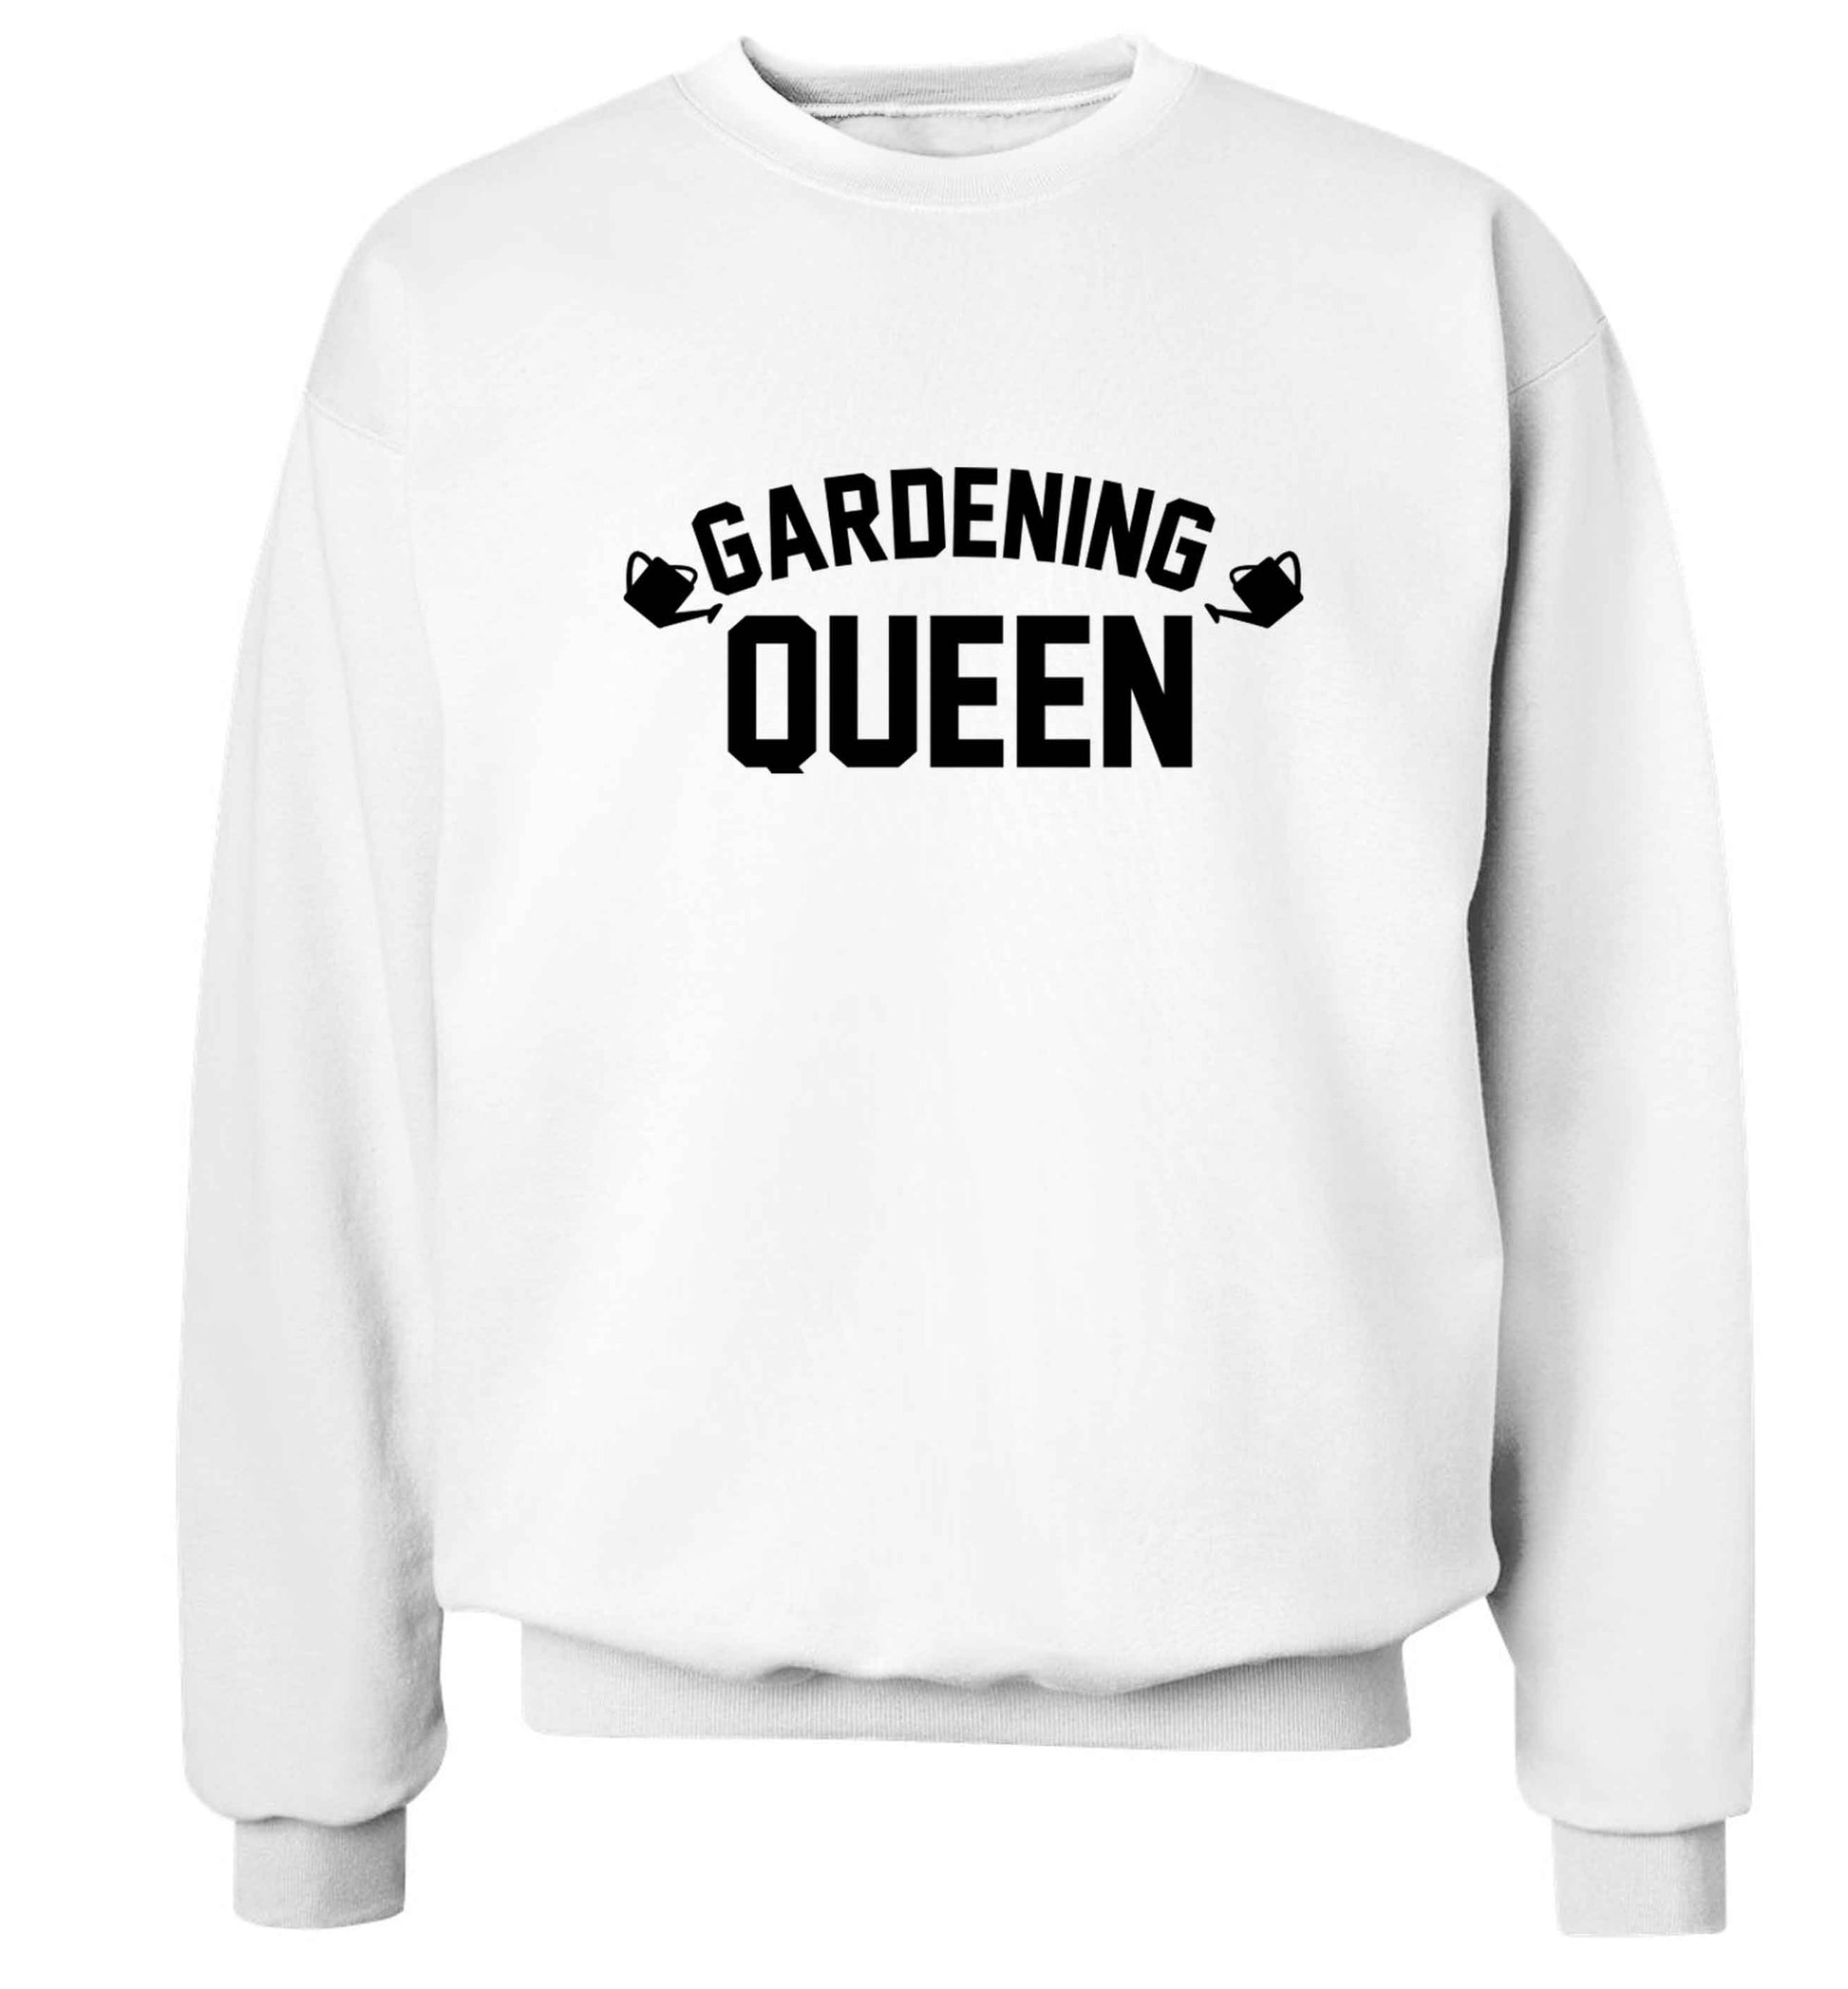 Gardening queen Adult's unisex white Sweater 2XL